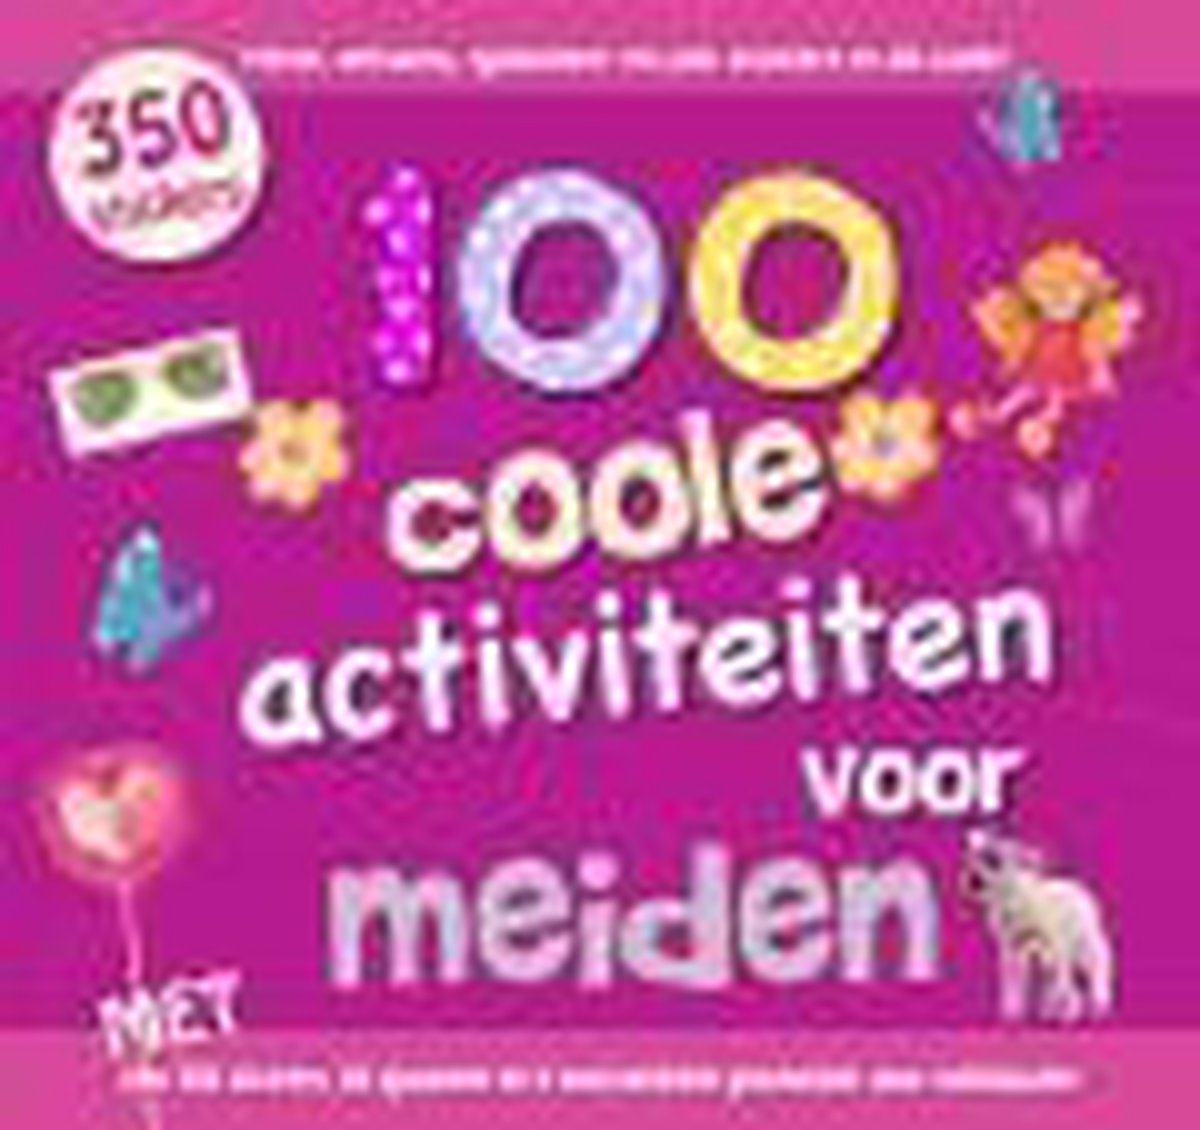 100 coole activiteiten voor meisjes